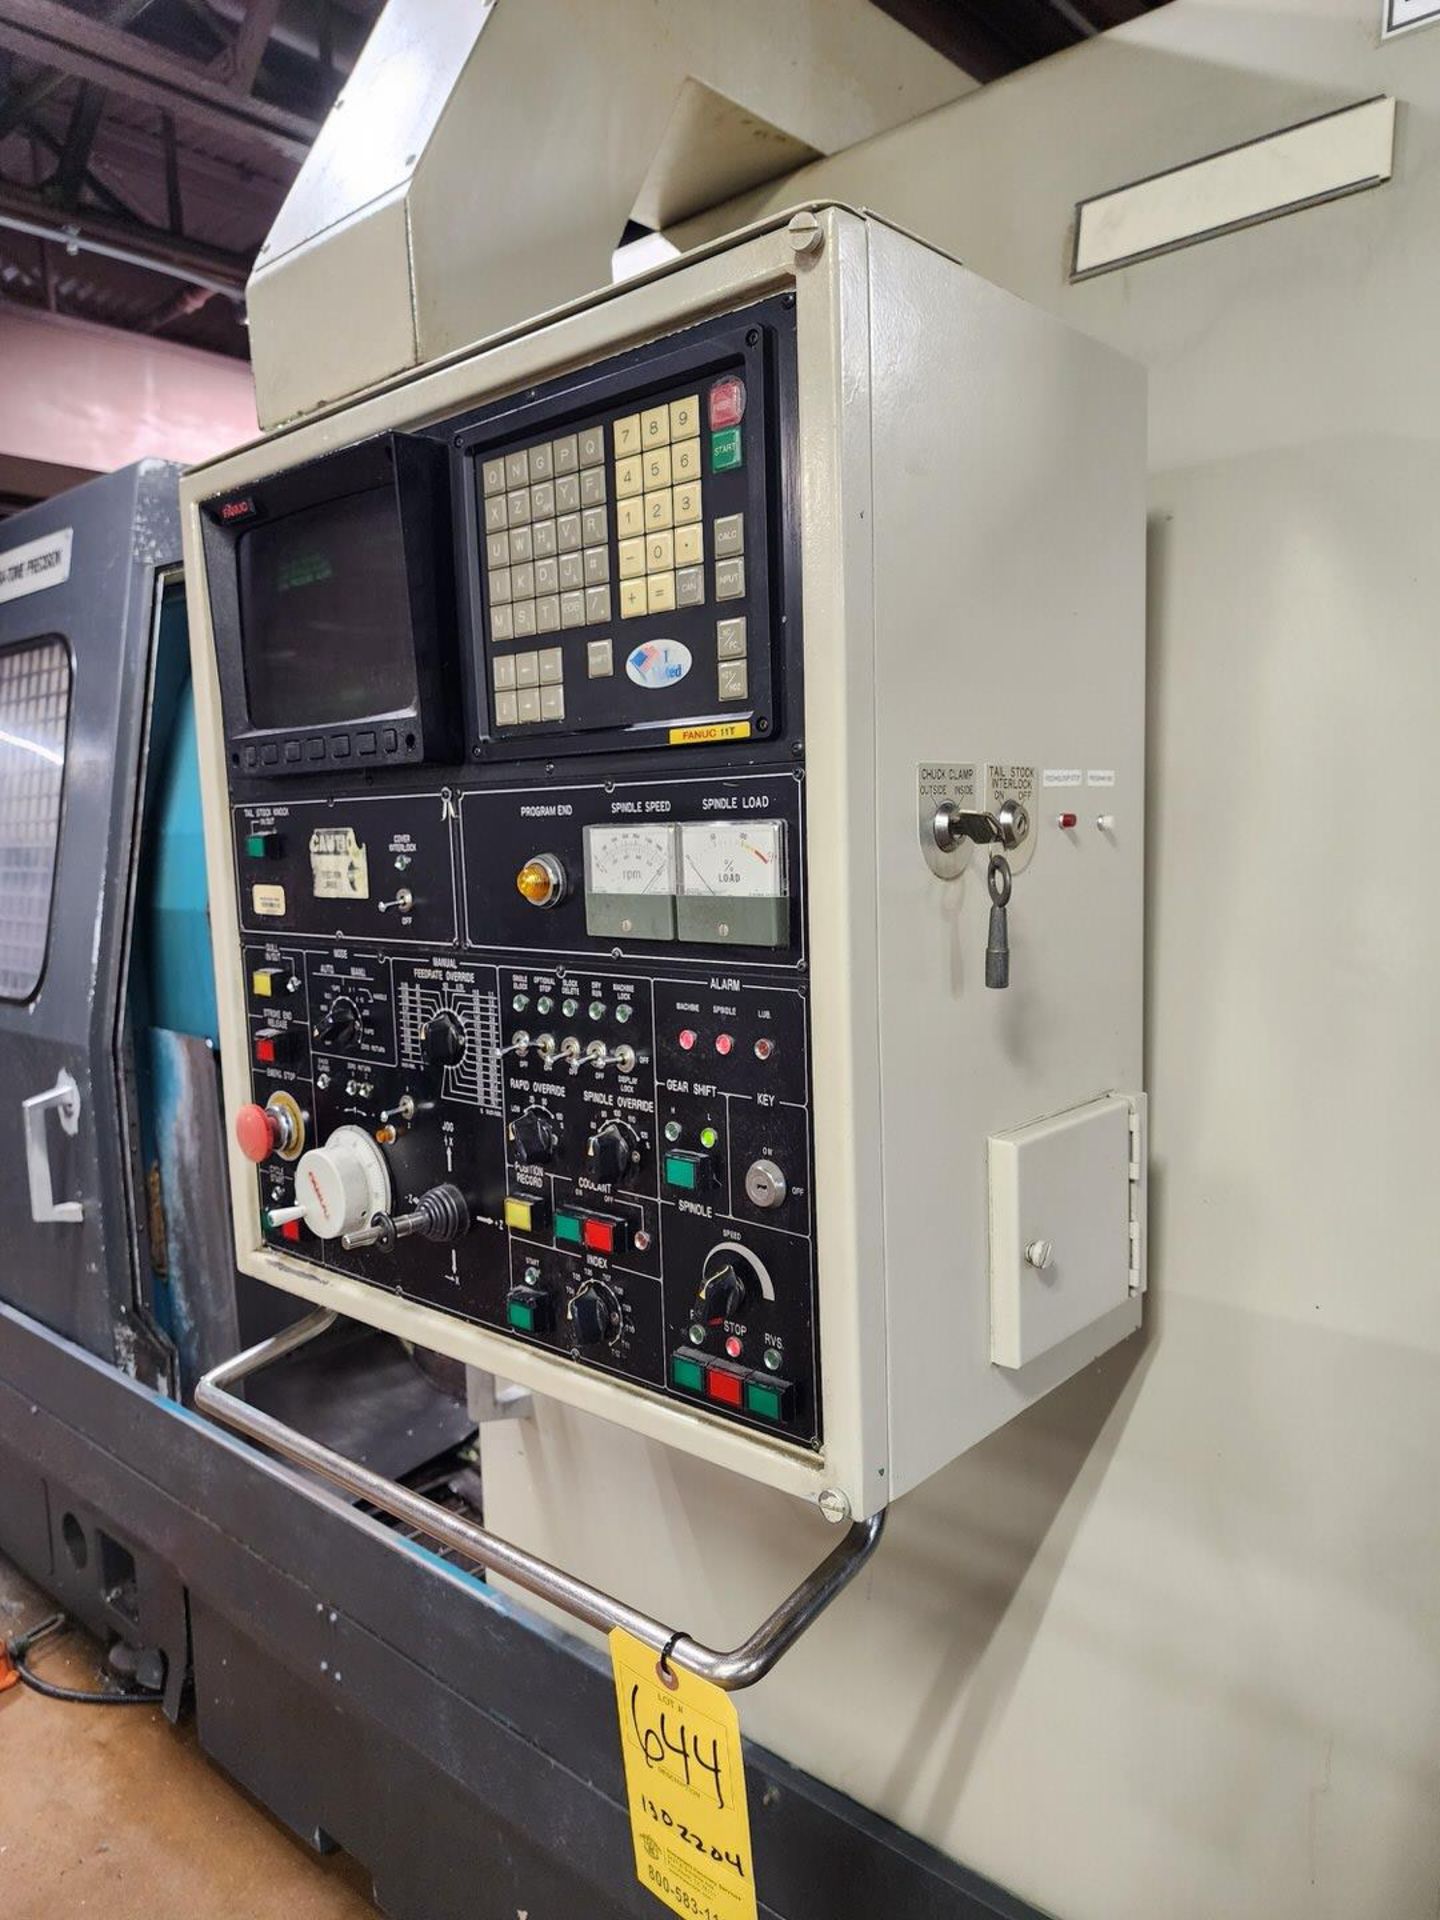 Nakamura Slant 3 CNC Turning Machine W/ Fanuc Controller, 12-Tool Turret Station (Asset# 1302204) - Image 15 of 17